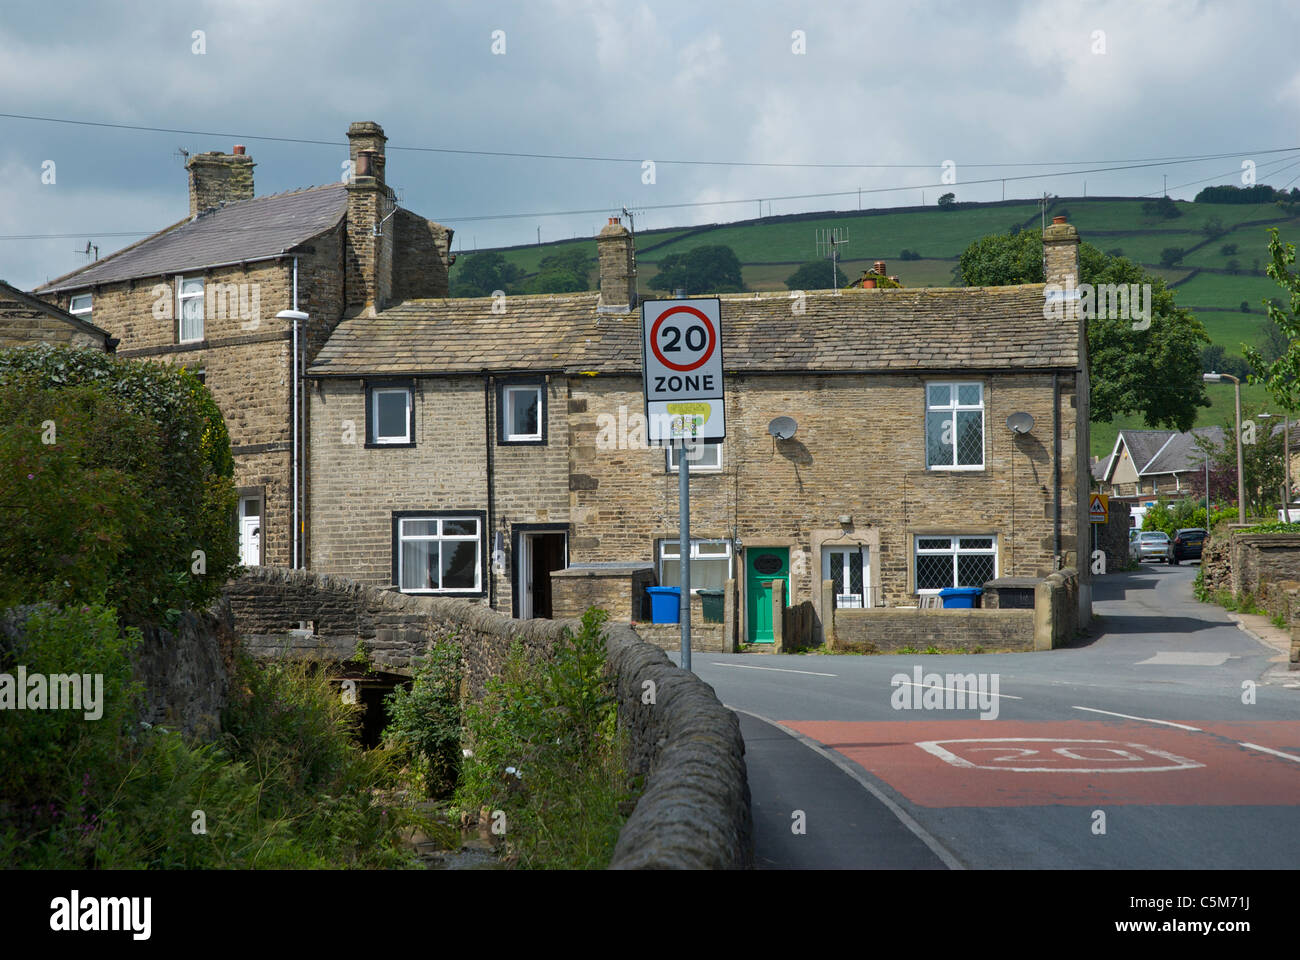 Límite de velocidad de 20mph, en la aldea de Cononley, North Yorkshire, Inglaterra Foto de stock